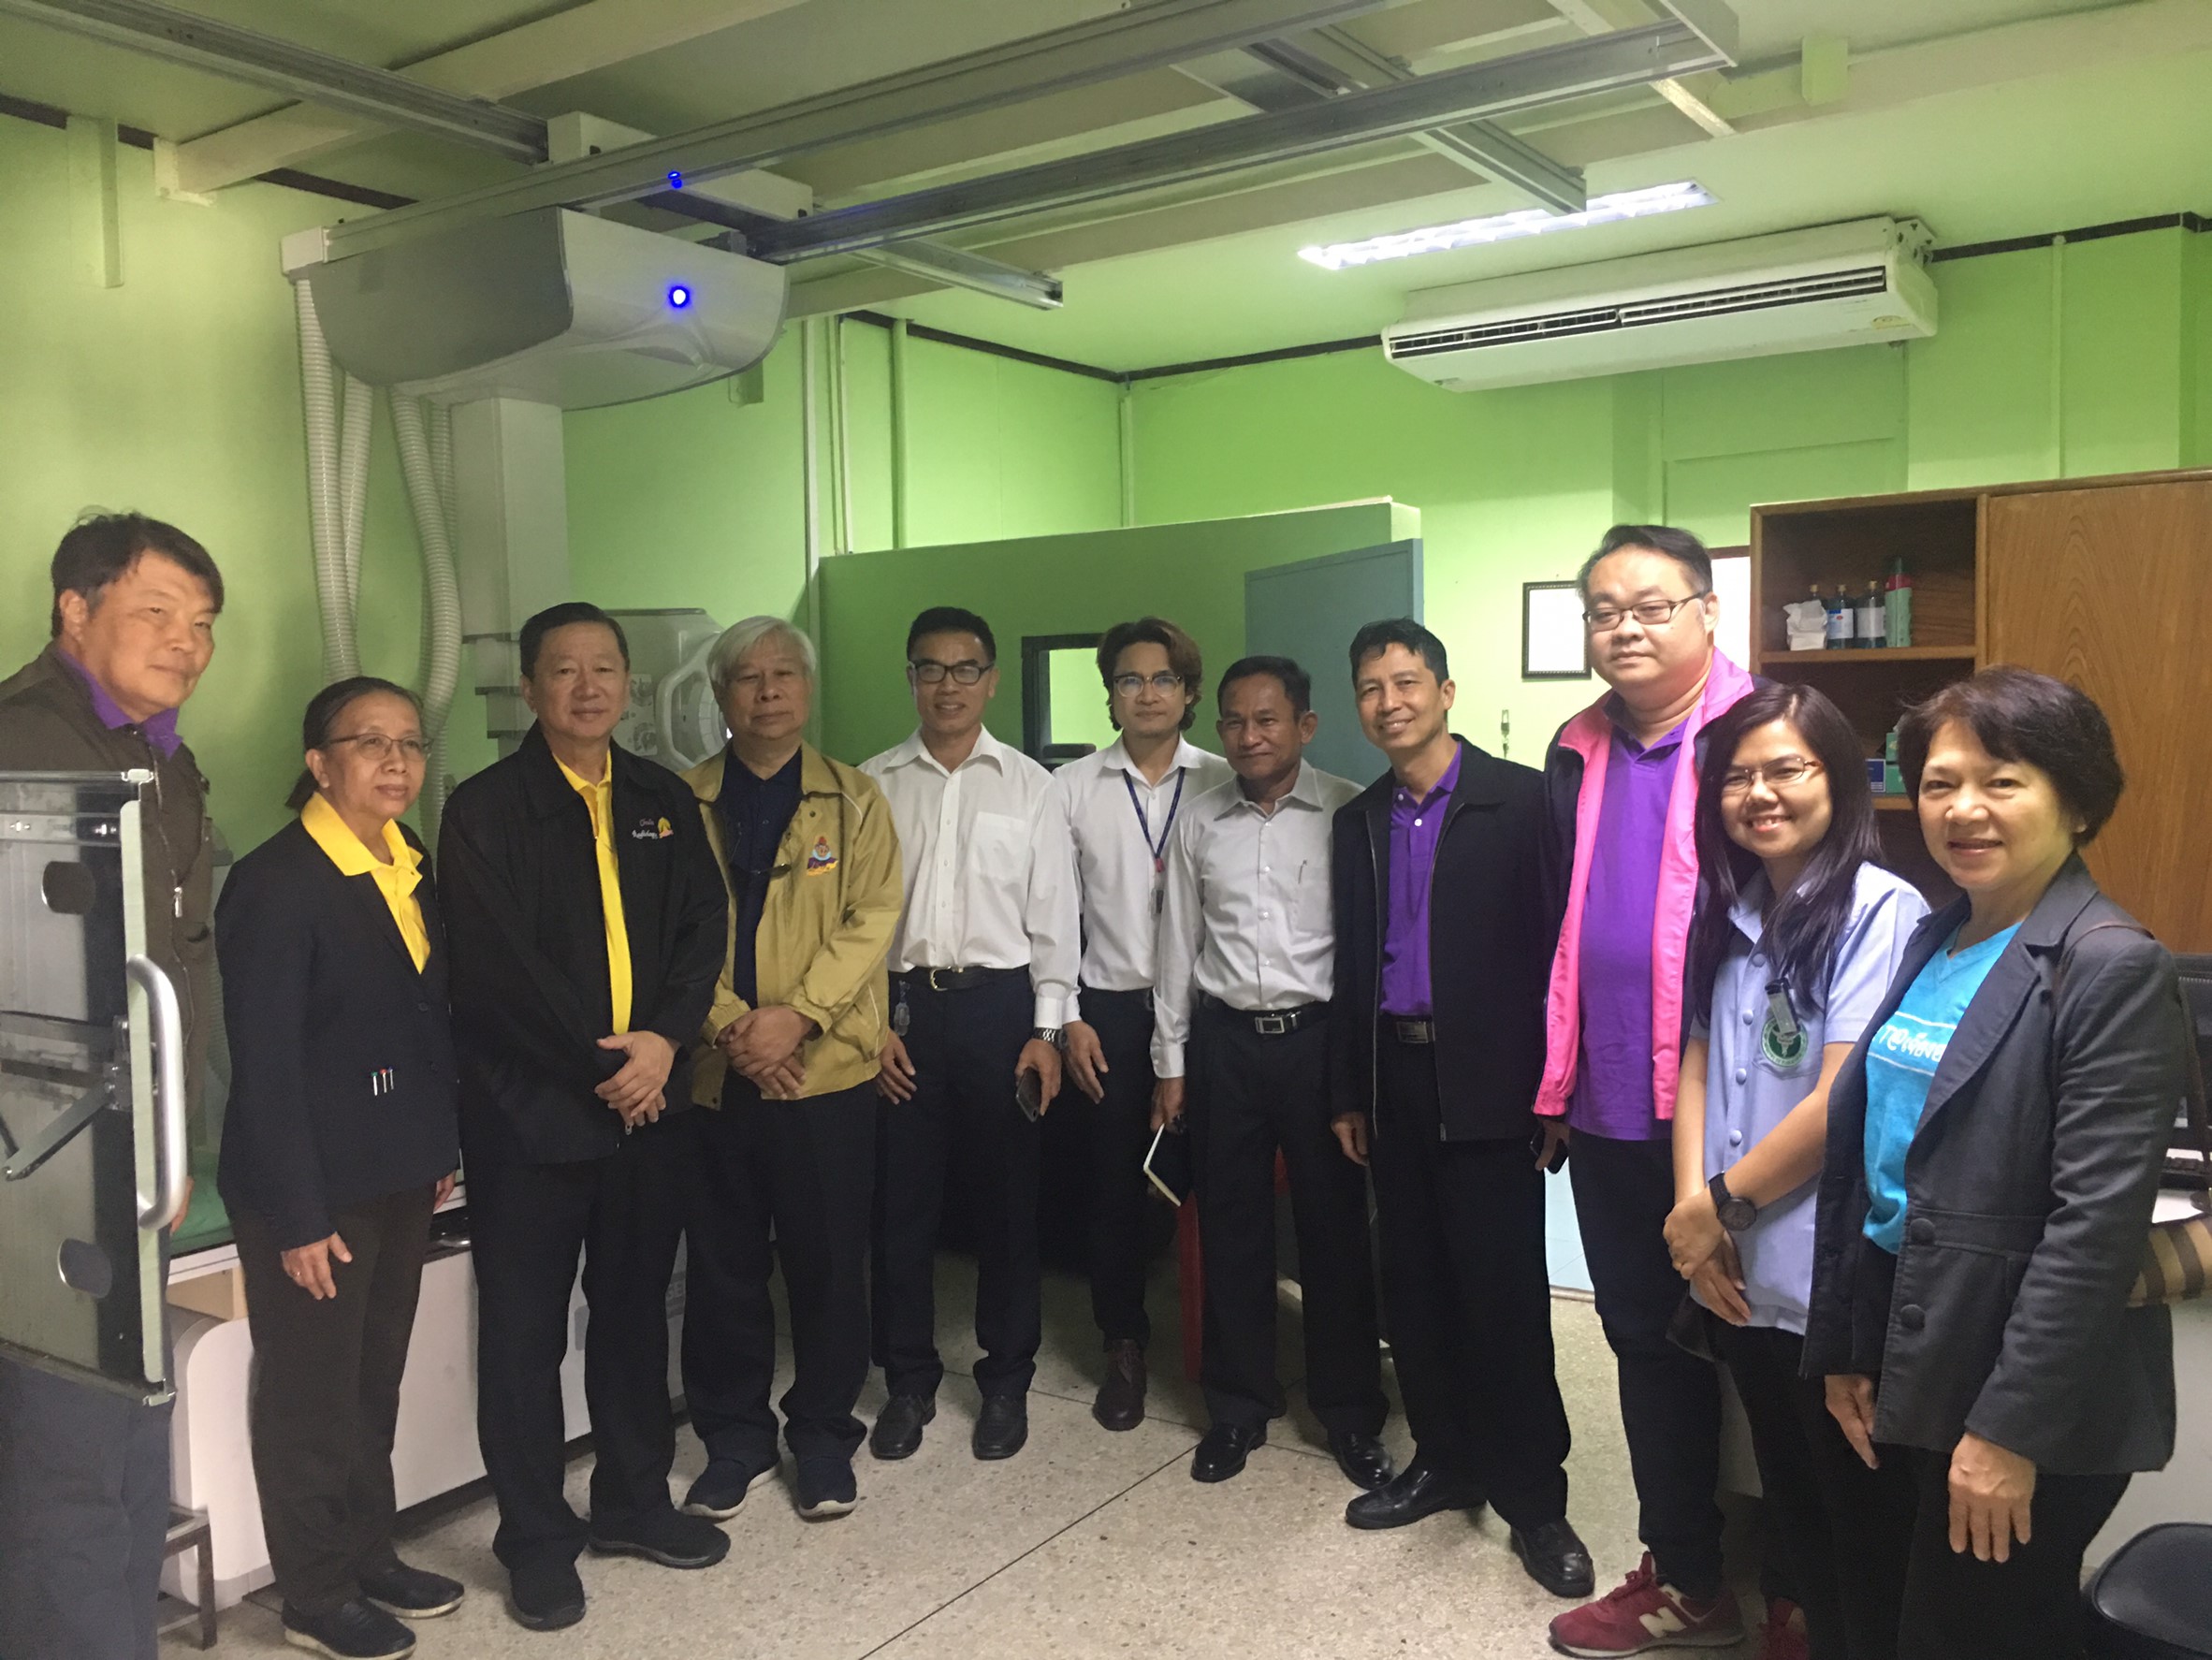 ประชุมวิชาการร่วมกับรังสีการแพทย์แห่งประเทศไทย ครั้งที่17 27-29 พ.ย. - พร้อมเข้าเยี่ยมและให้กำลังใจหน่วยงานรังสีวิทยาในพื้นที่จังหวัดอุบลราชธานีระหว่างวันที่ 25-26 พฤศจิกายน 2562 83